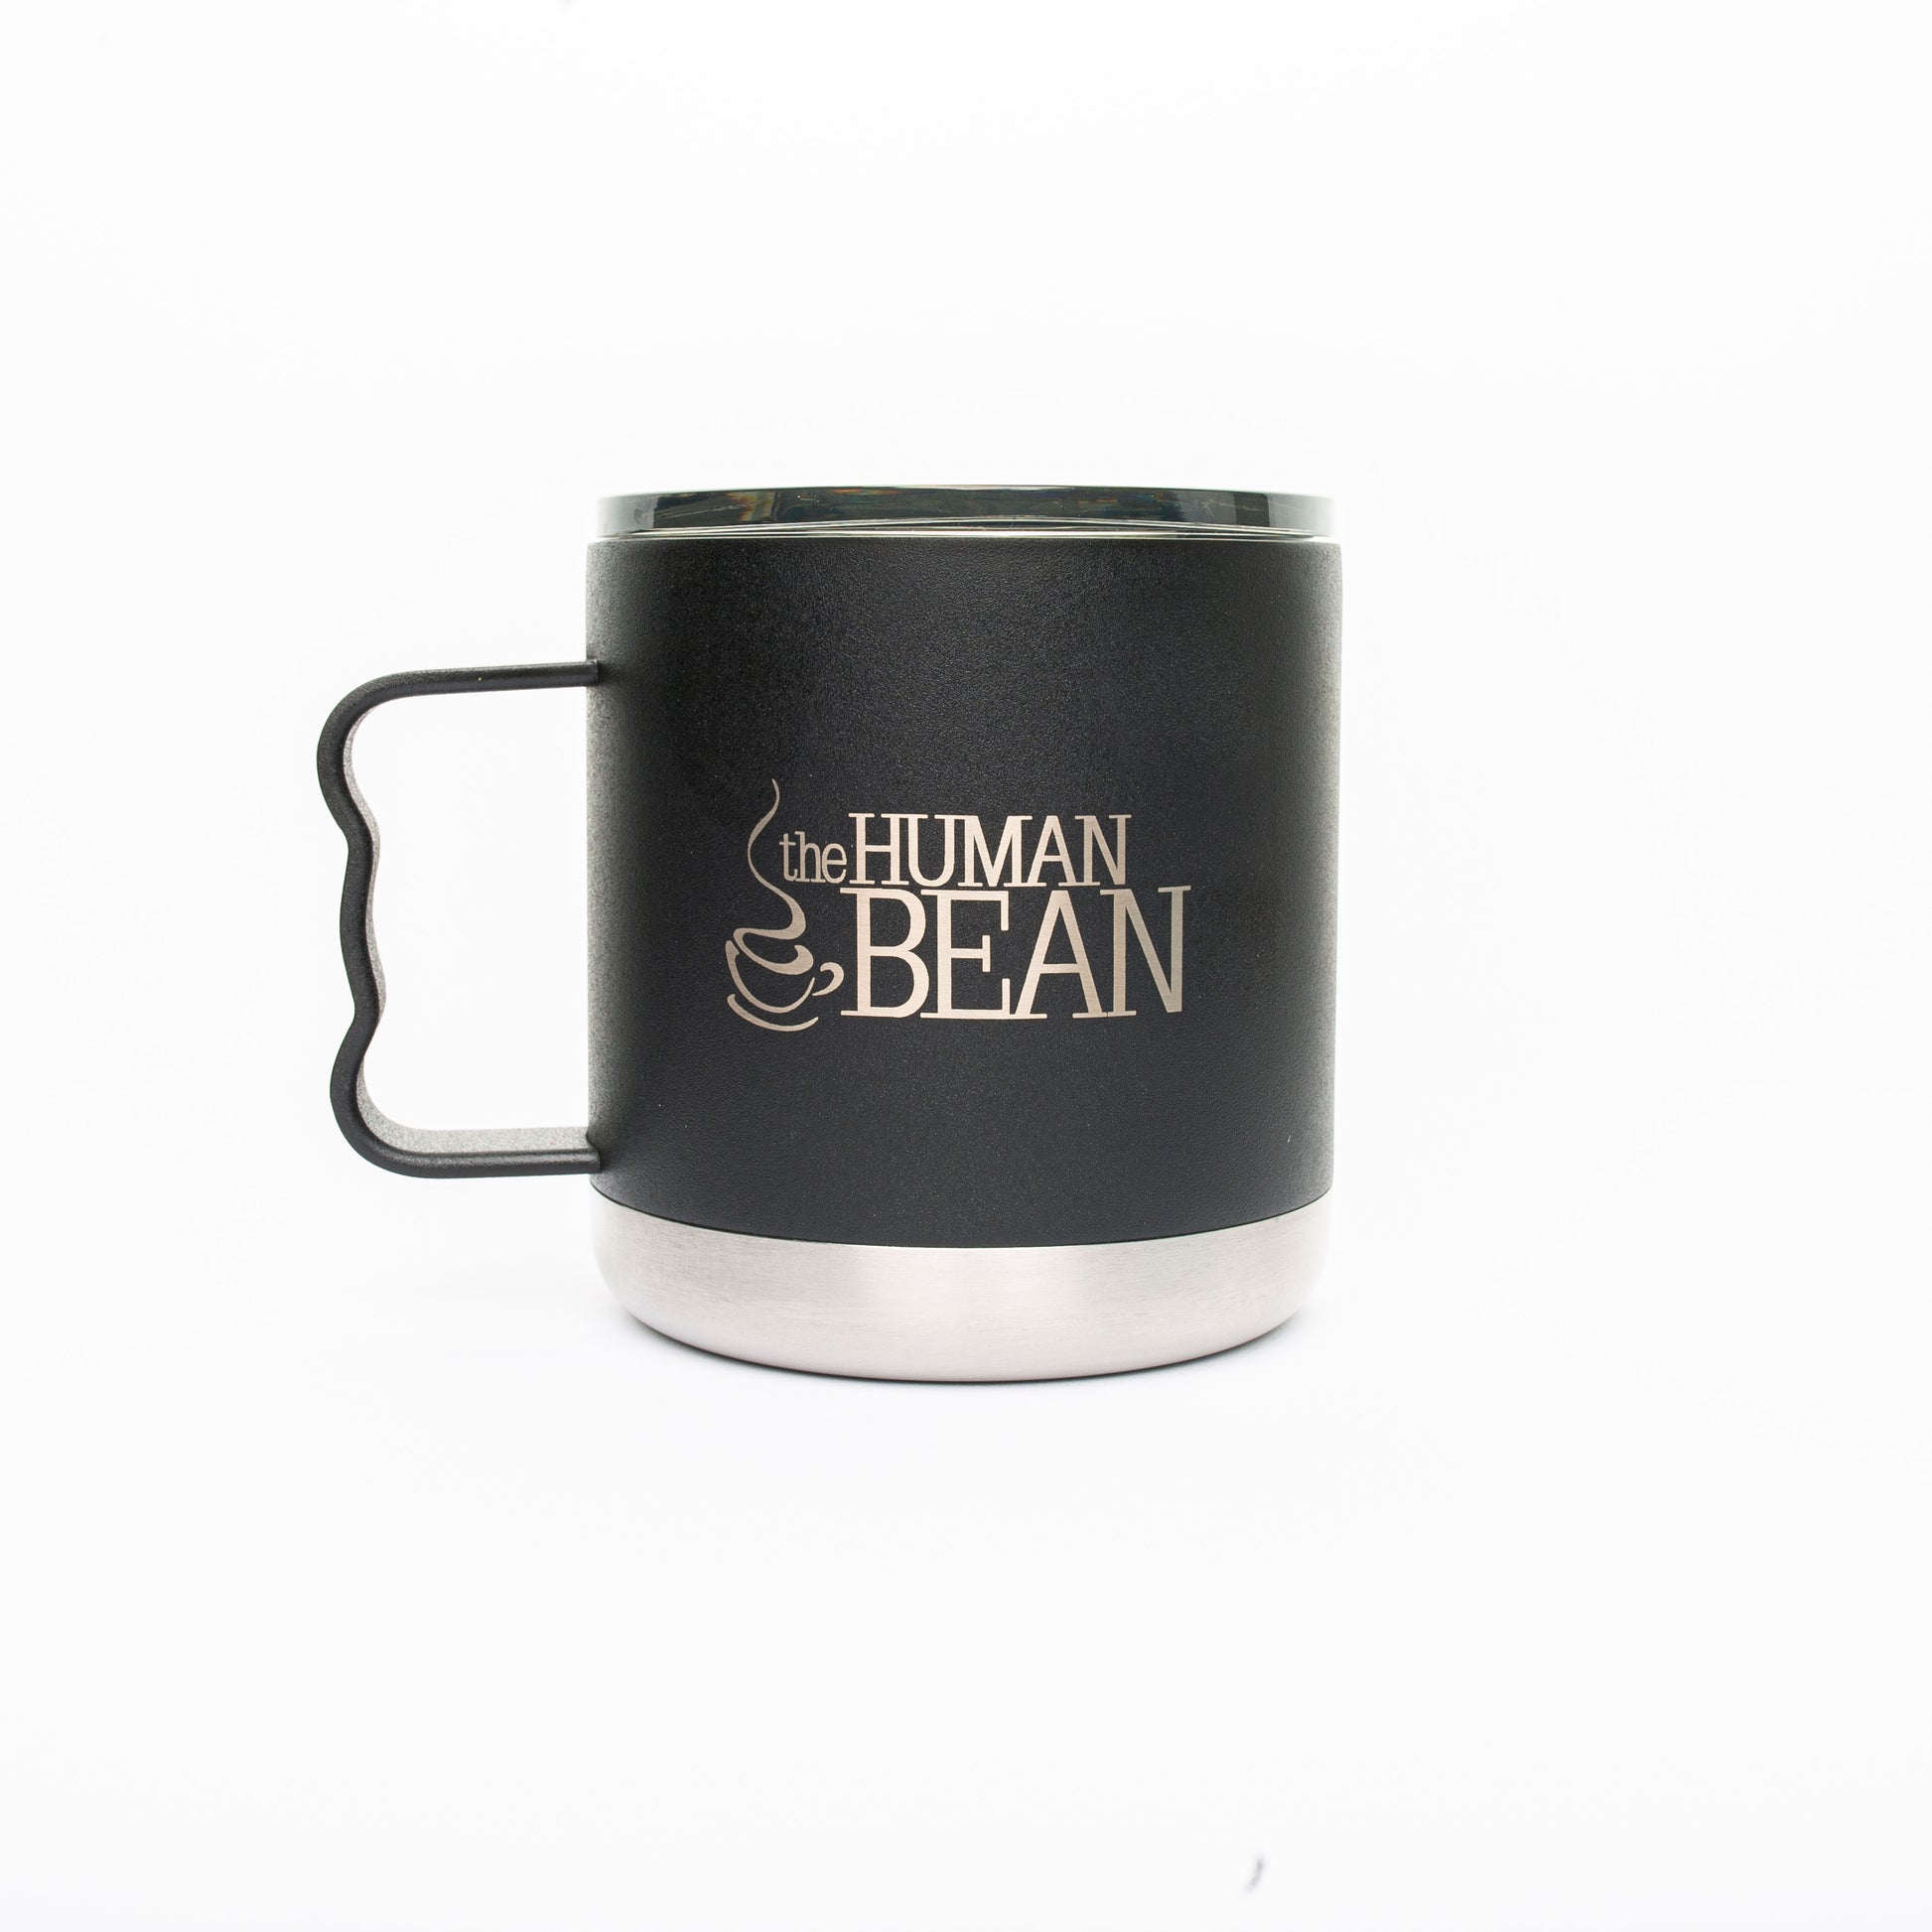 Insulated Camp Mug, Steel Coffee Cup